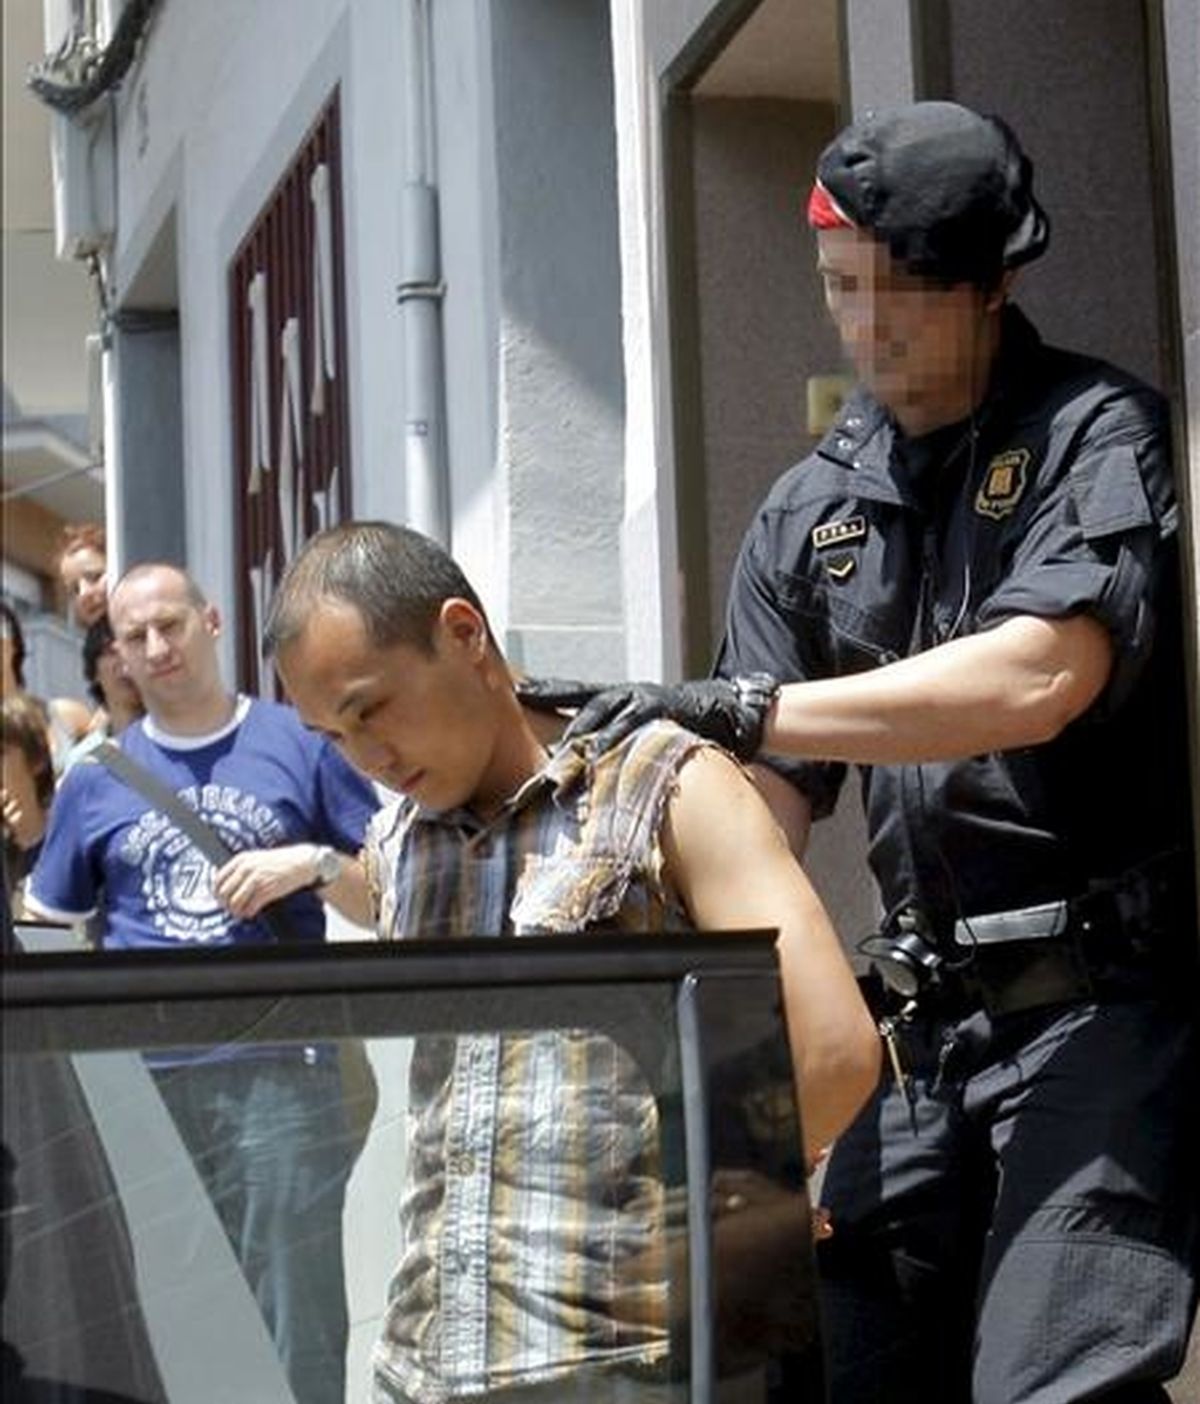 Un agente de los Mossos d'Esquadra traslada a uno de los detenidos durante la operación en la que se han registrado unos 70 talleres clandestinos textiles regentados por ciudadanos de origen chino en Mataró (Barcelona). EFE/Archivo